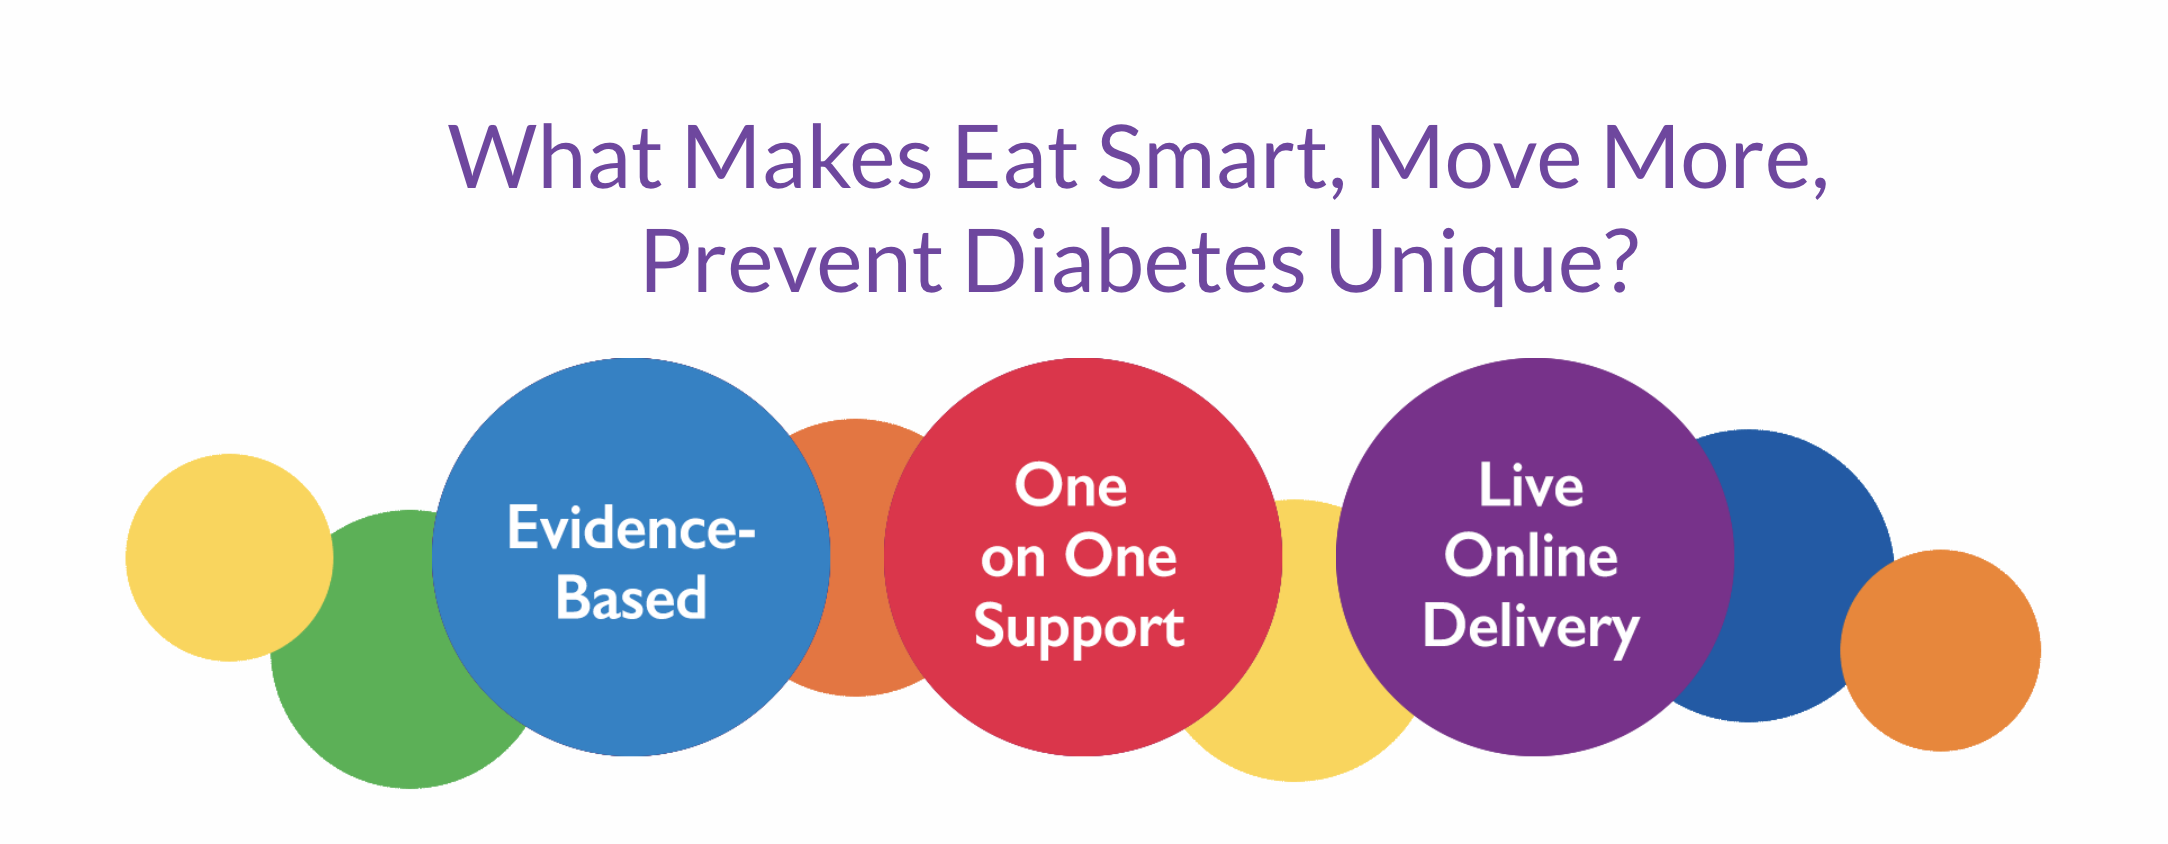 Eat Smart, Move More, Prevent Diabetes - vendor materials